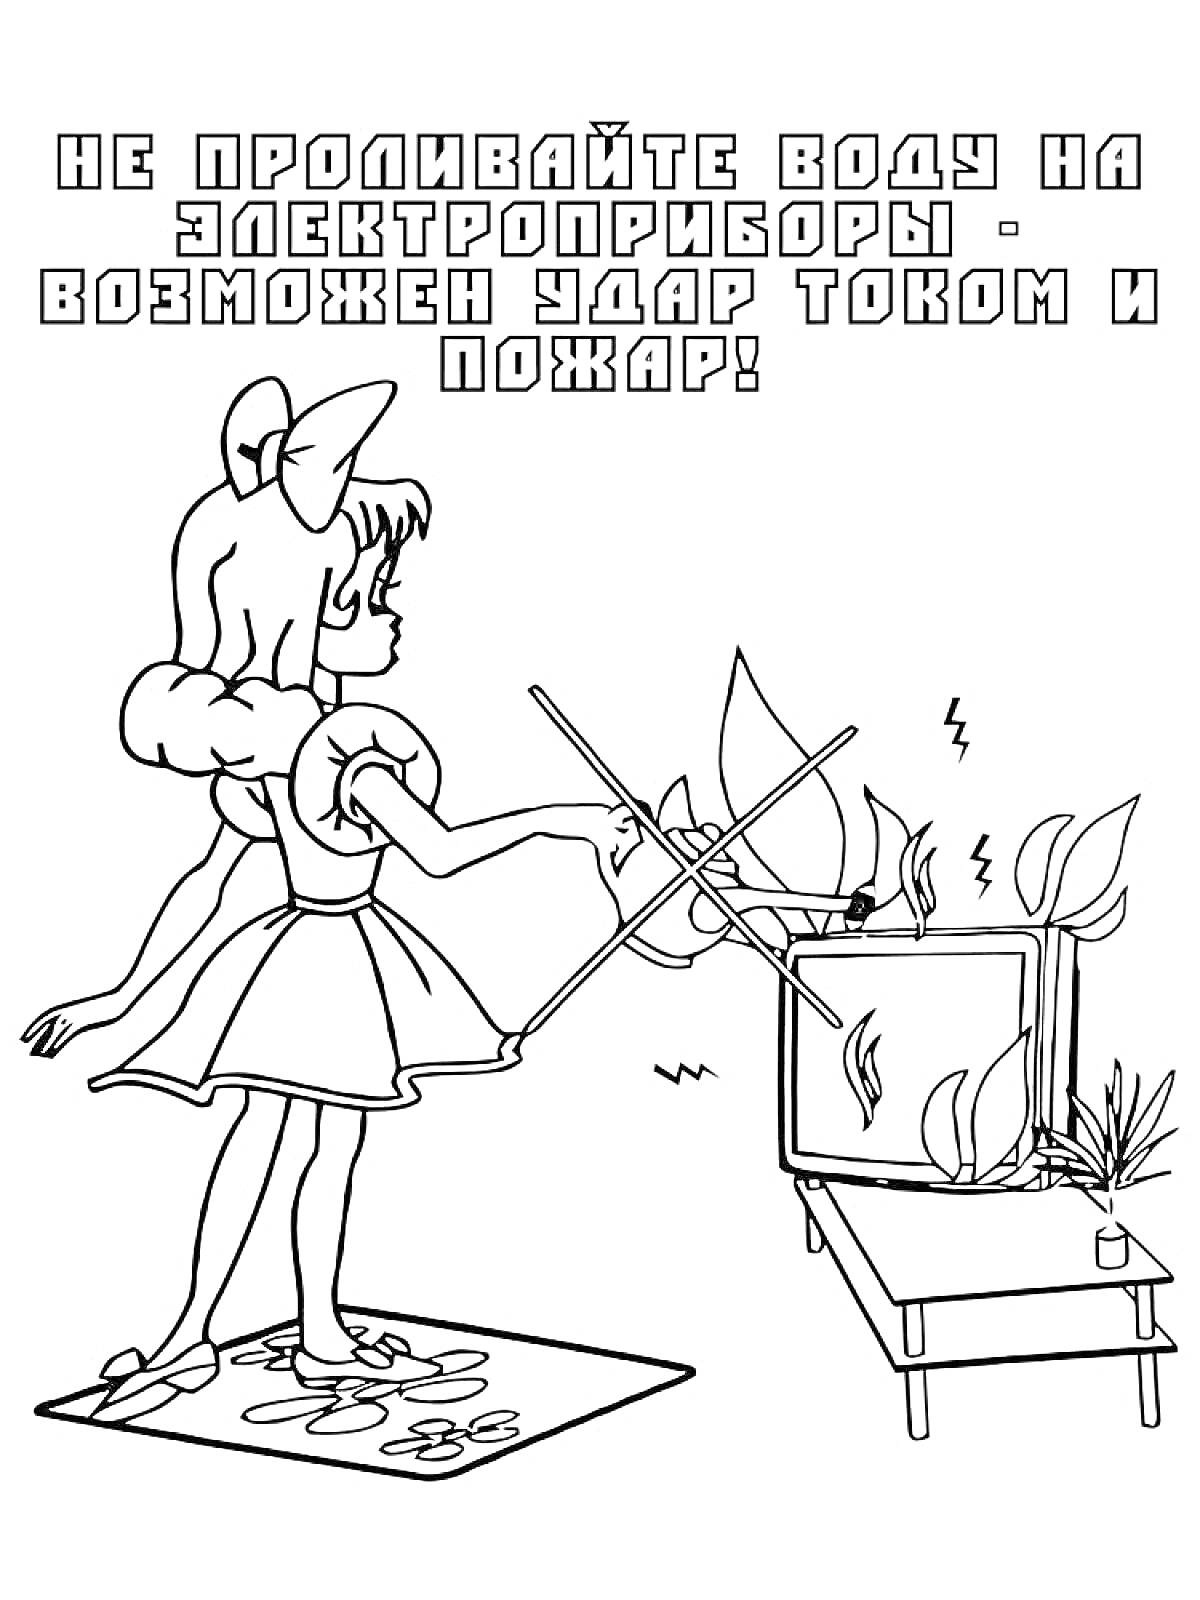 Раскраска Девочка проливает воду на телевизор с удлинителем, возникает угроза удара током и пожара